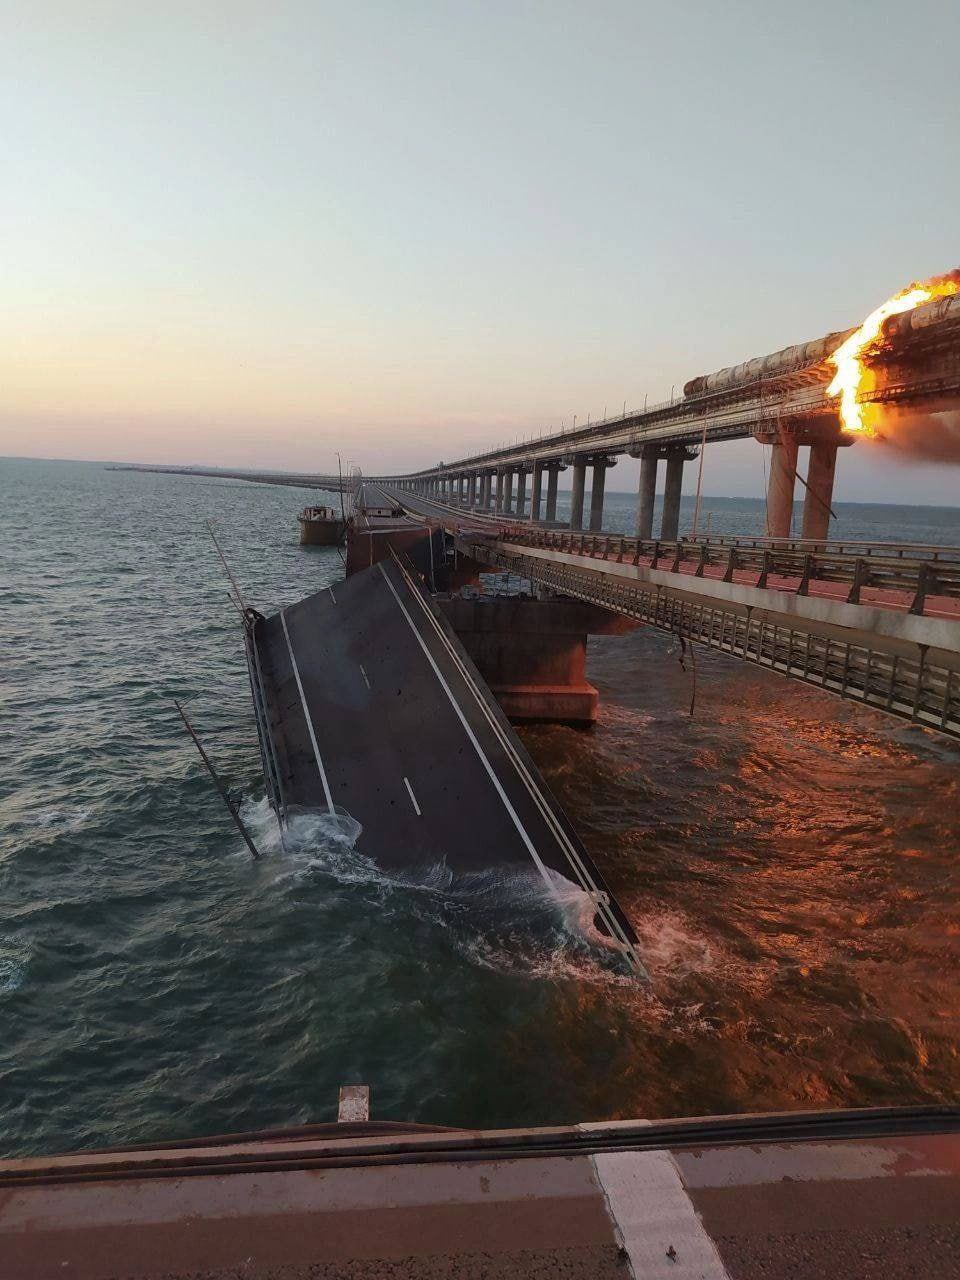 被俄羅斯佔領的烏克蘭克里米亞大橋橋體已經被大火燒斷，坍塌入海。   圖: 翻攝自 Rob Lee 推特 (資料照)